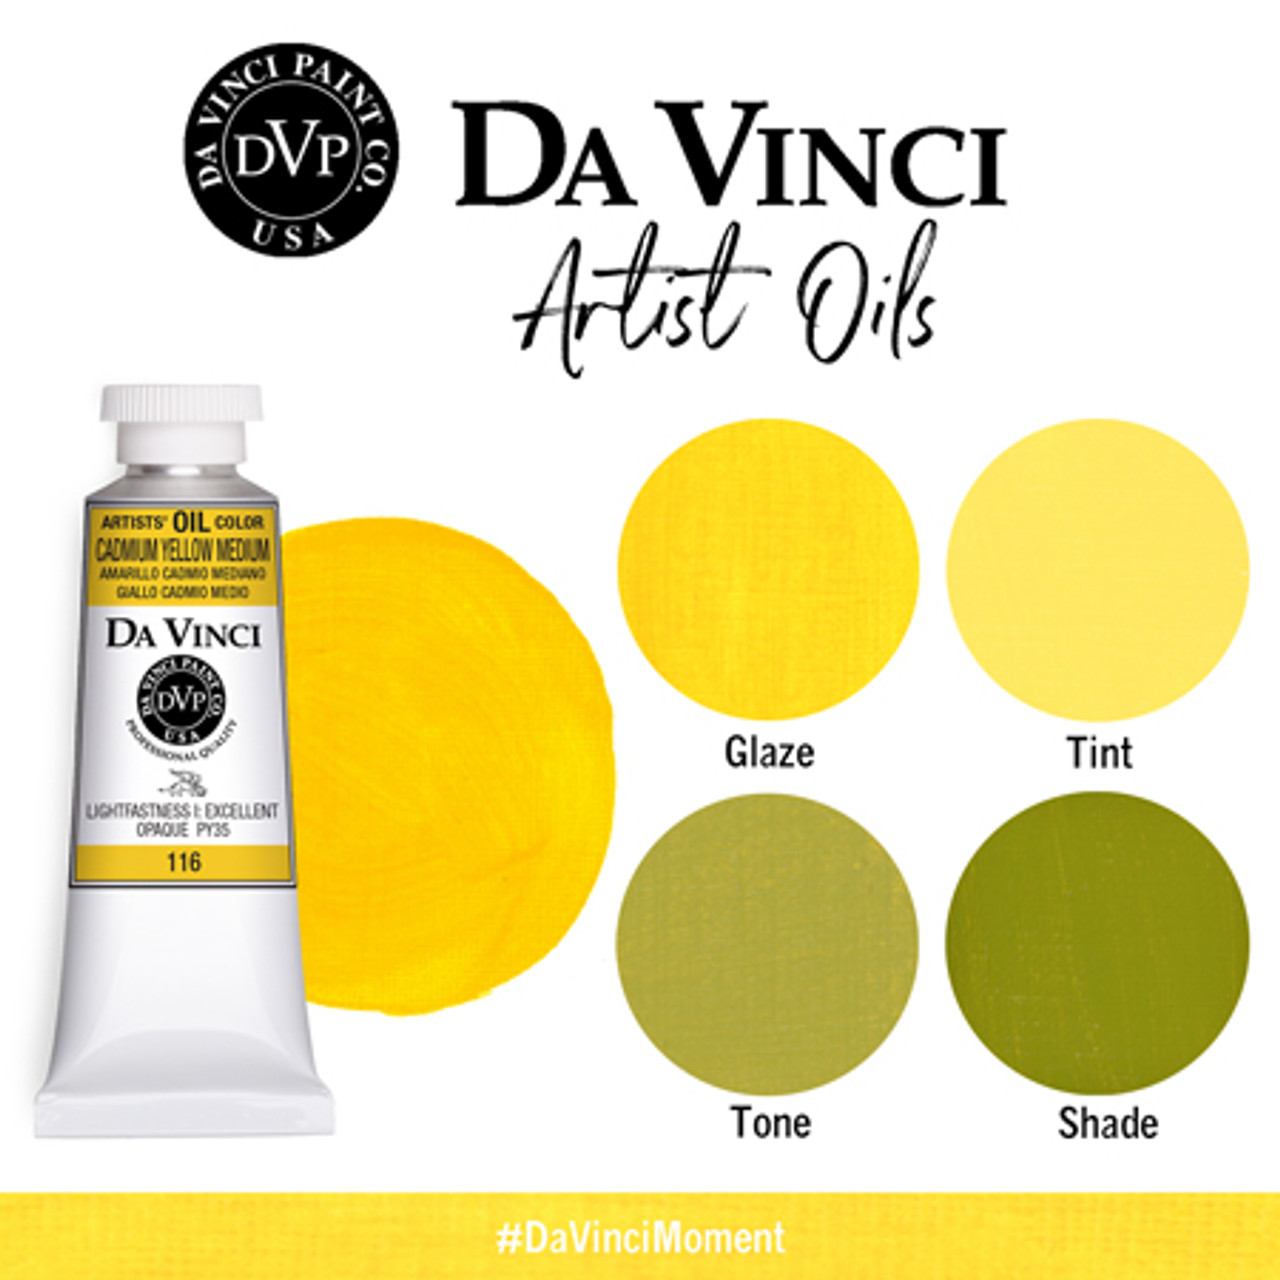 Cadmium Yellow Medium (37mL Oil Paint)